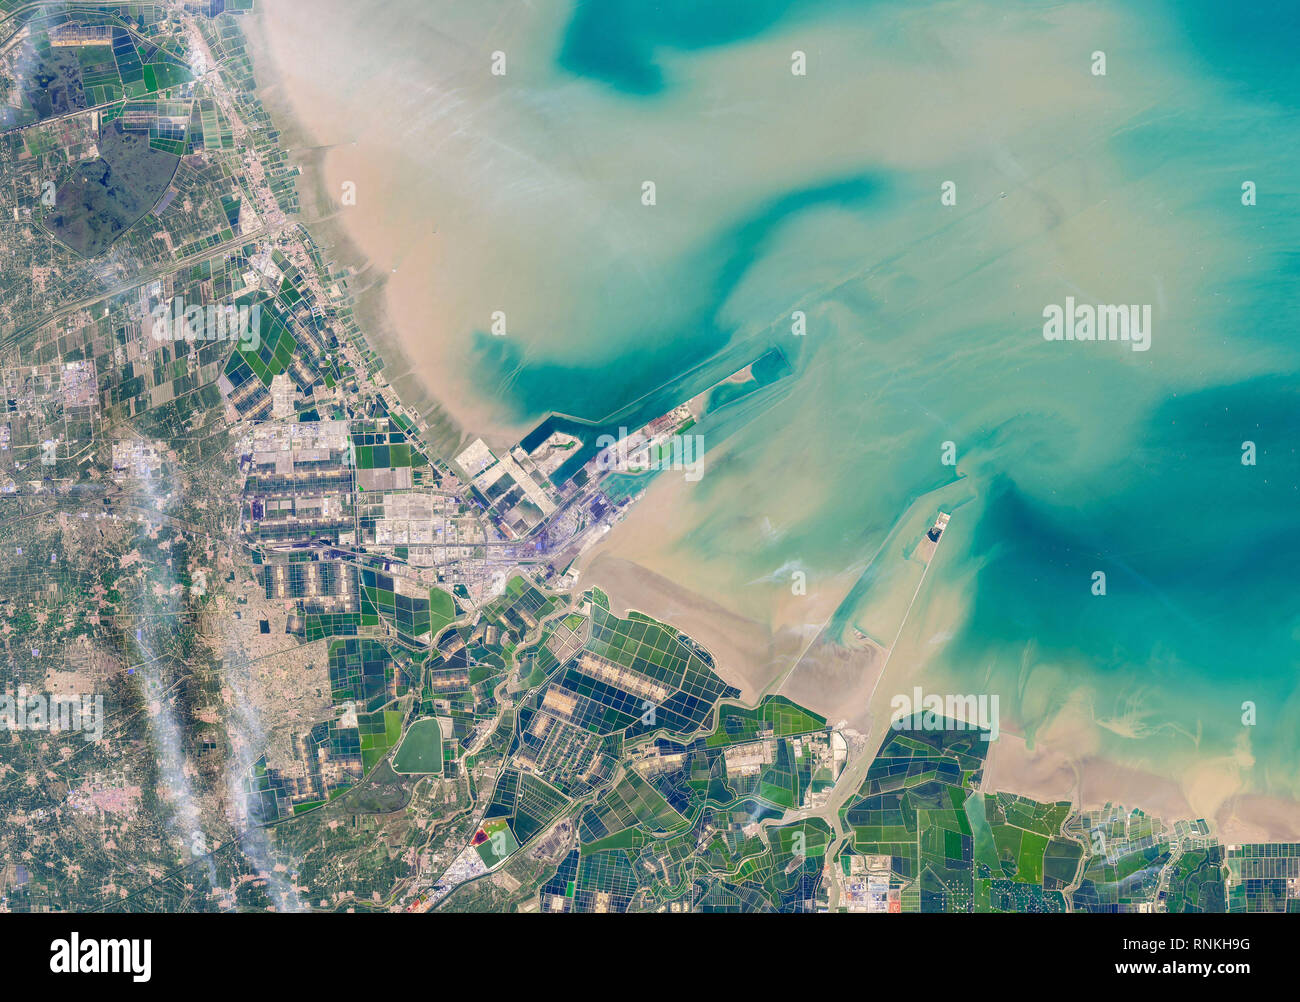 Vista satélite de la península de Shandong en el este de China - abierta una extensión de marismas mareales frecuentado principalmente por aves y otros animales salvajes Foto de stock